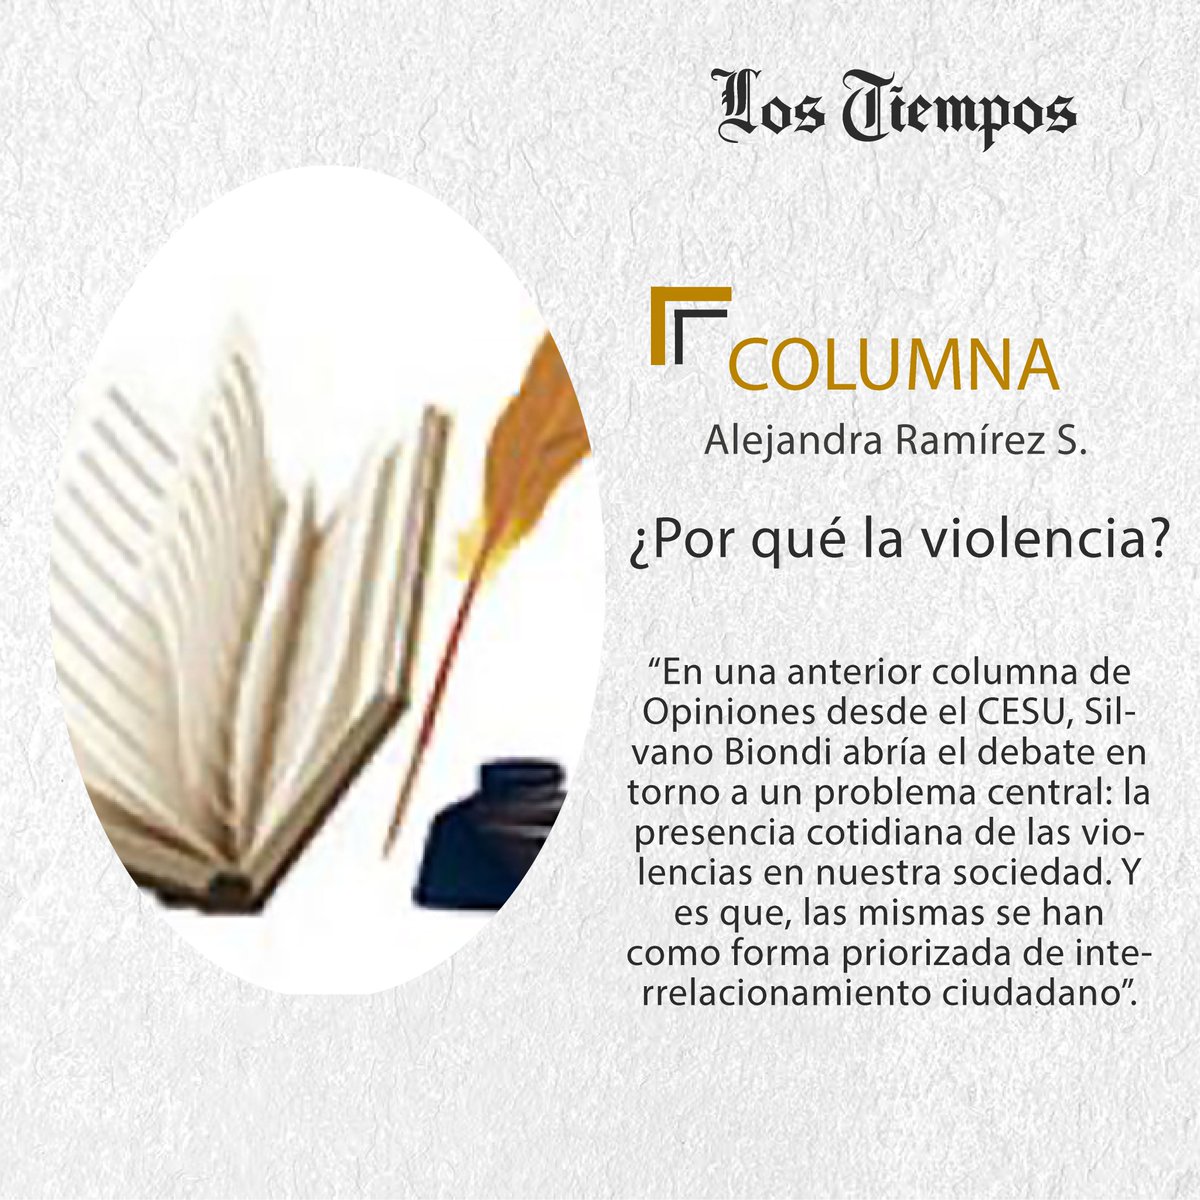 #LTColumna #Puntos de Vista
Lea la columna de Alejandra Ramírez S.
👉tinyurl.com/3ssxppuw